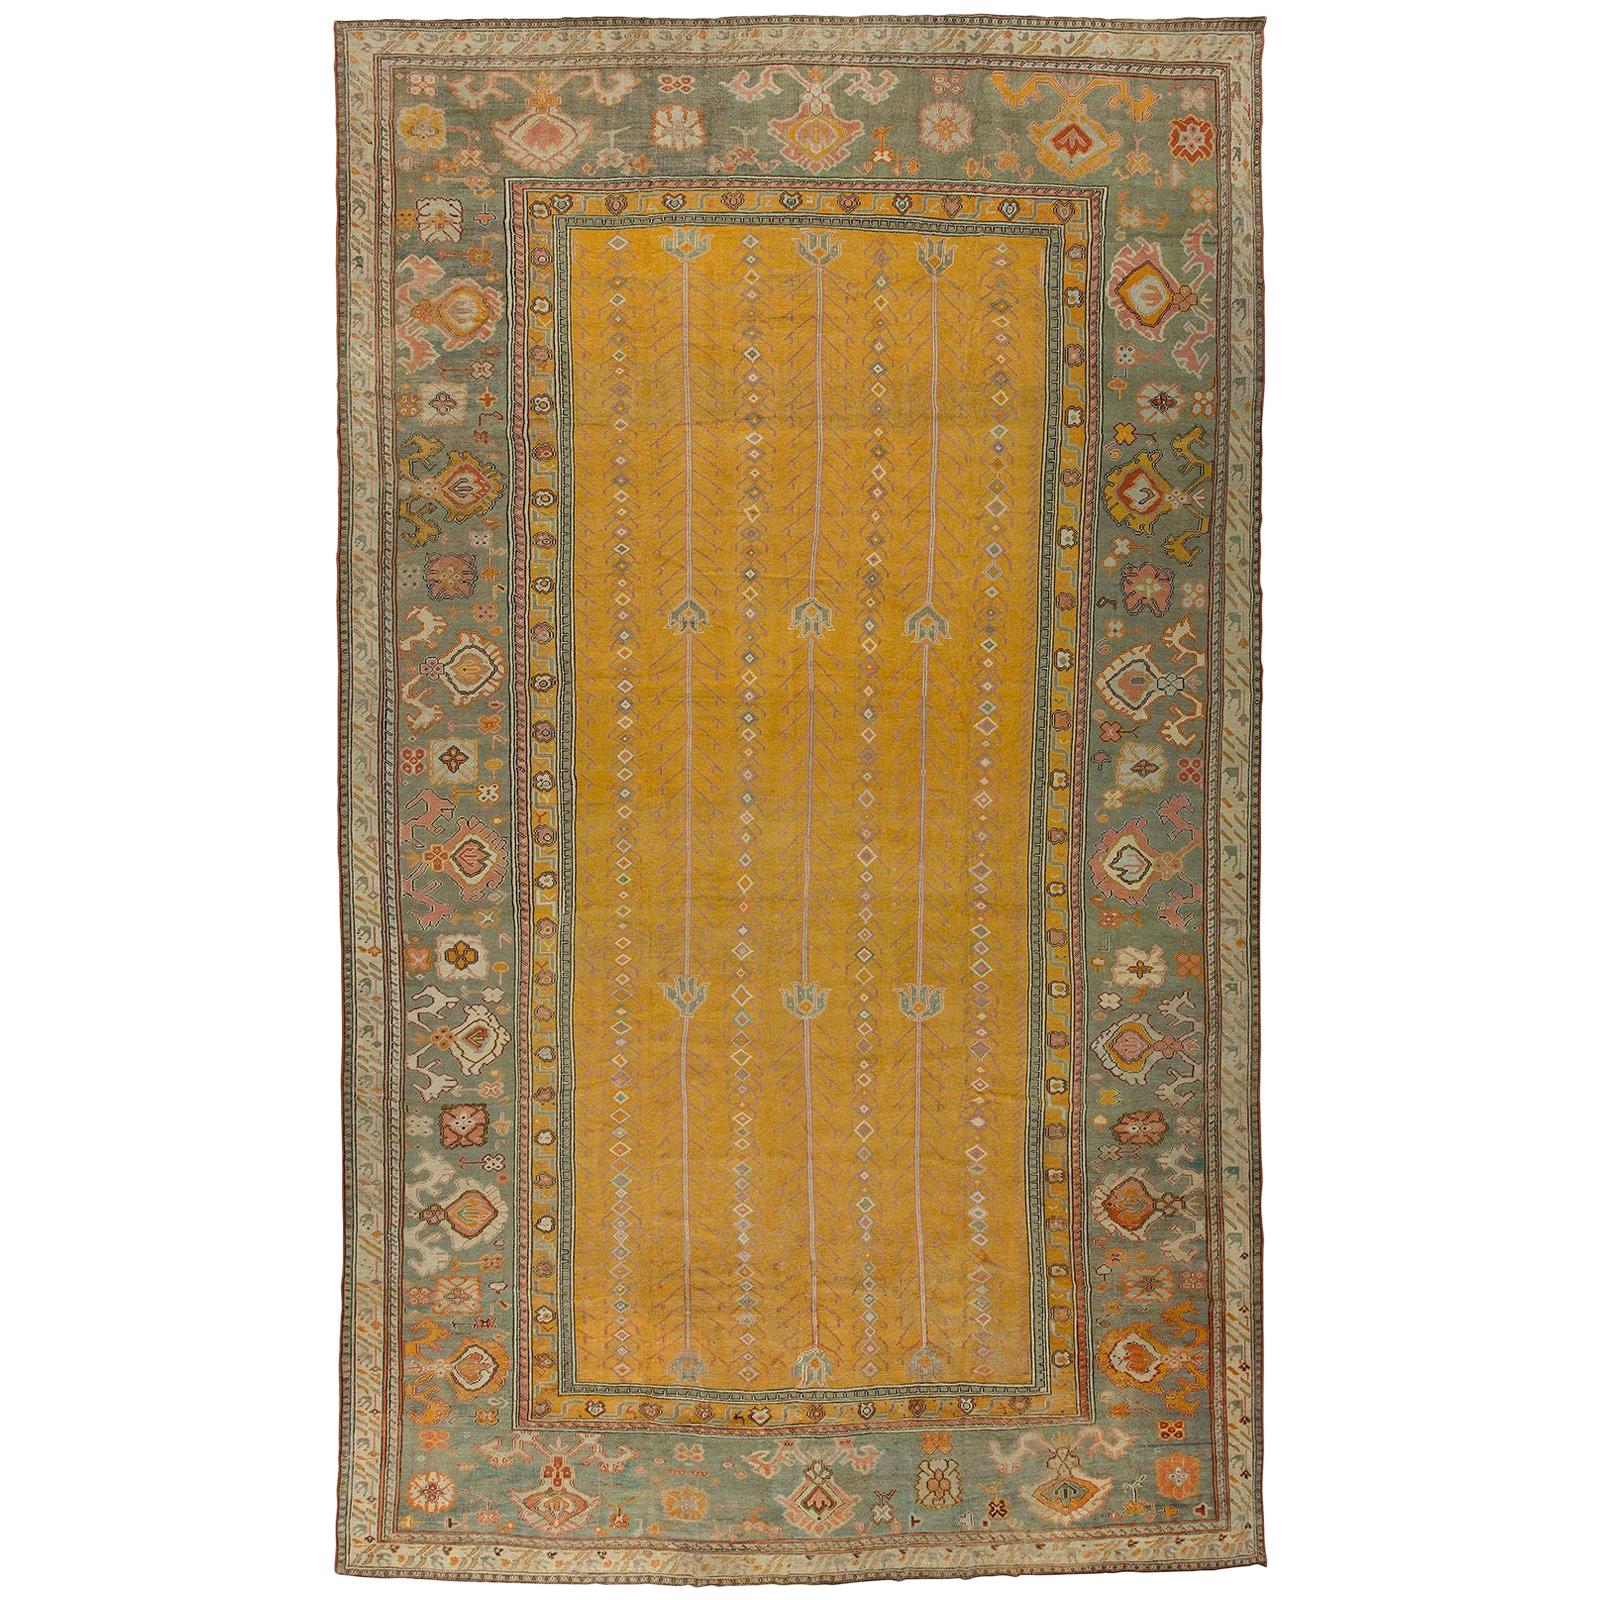 Gelbgelber antiker türkischer Ghiordes-Teppich